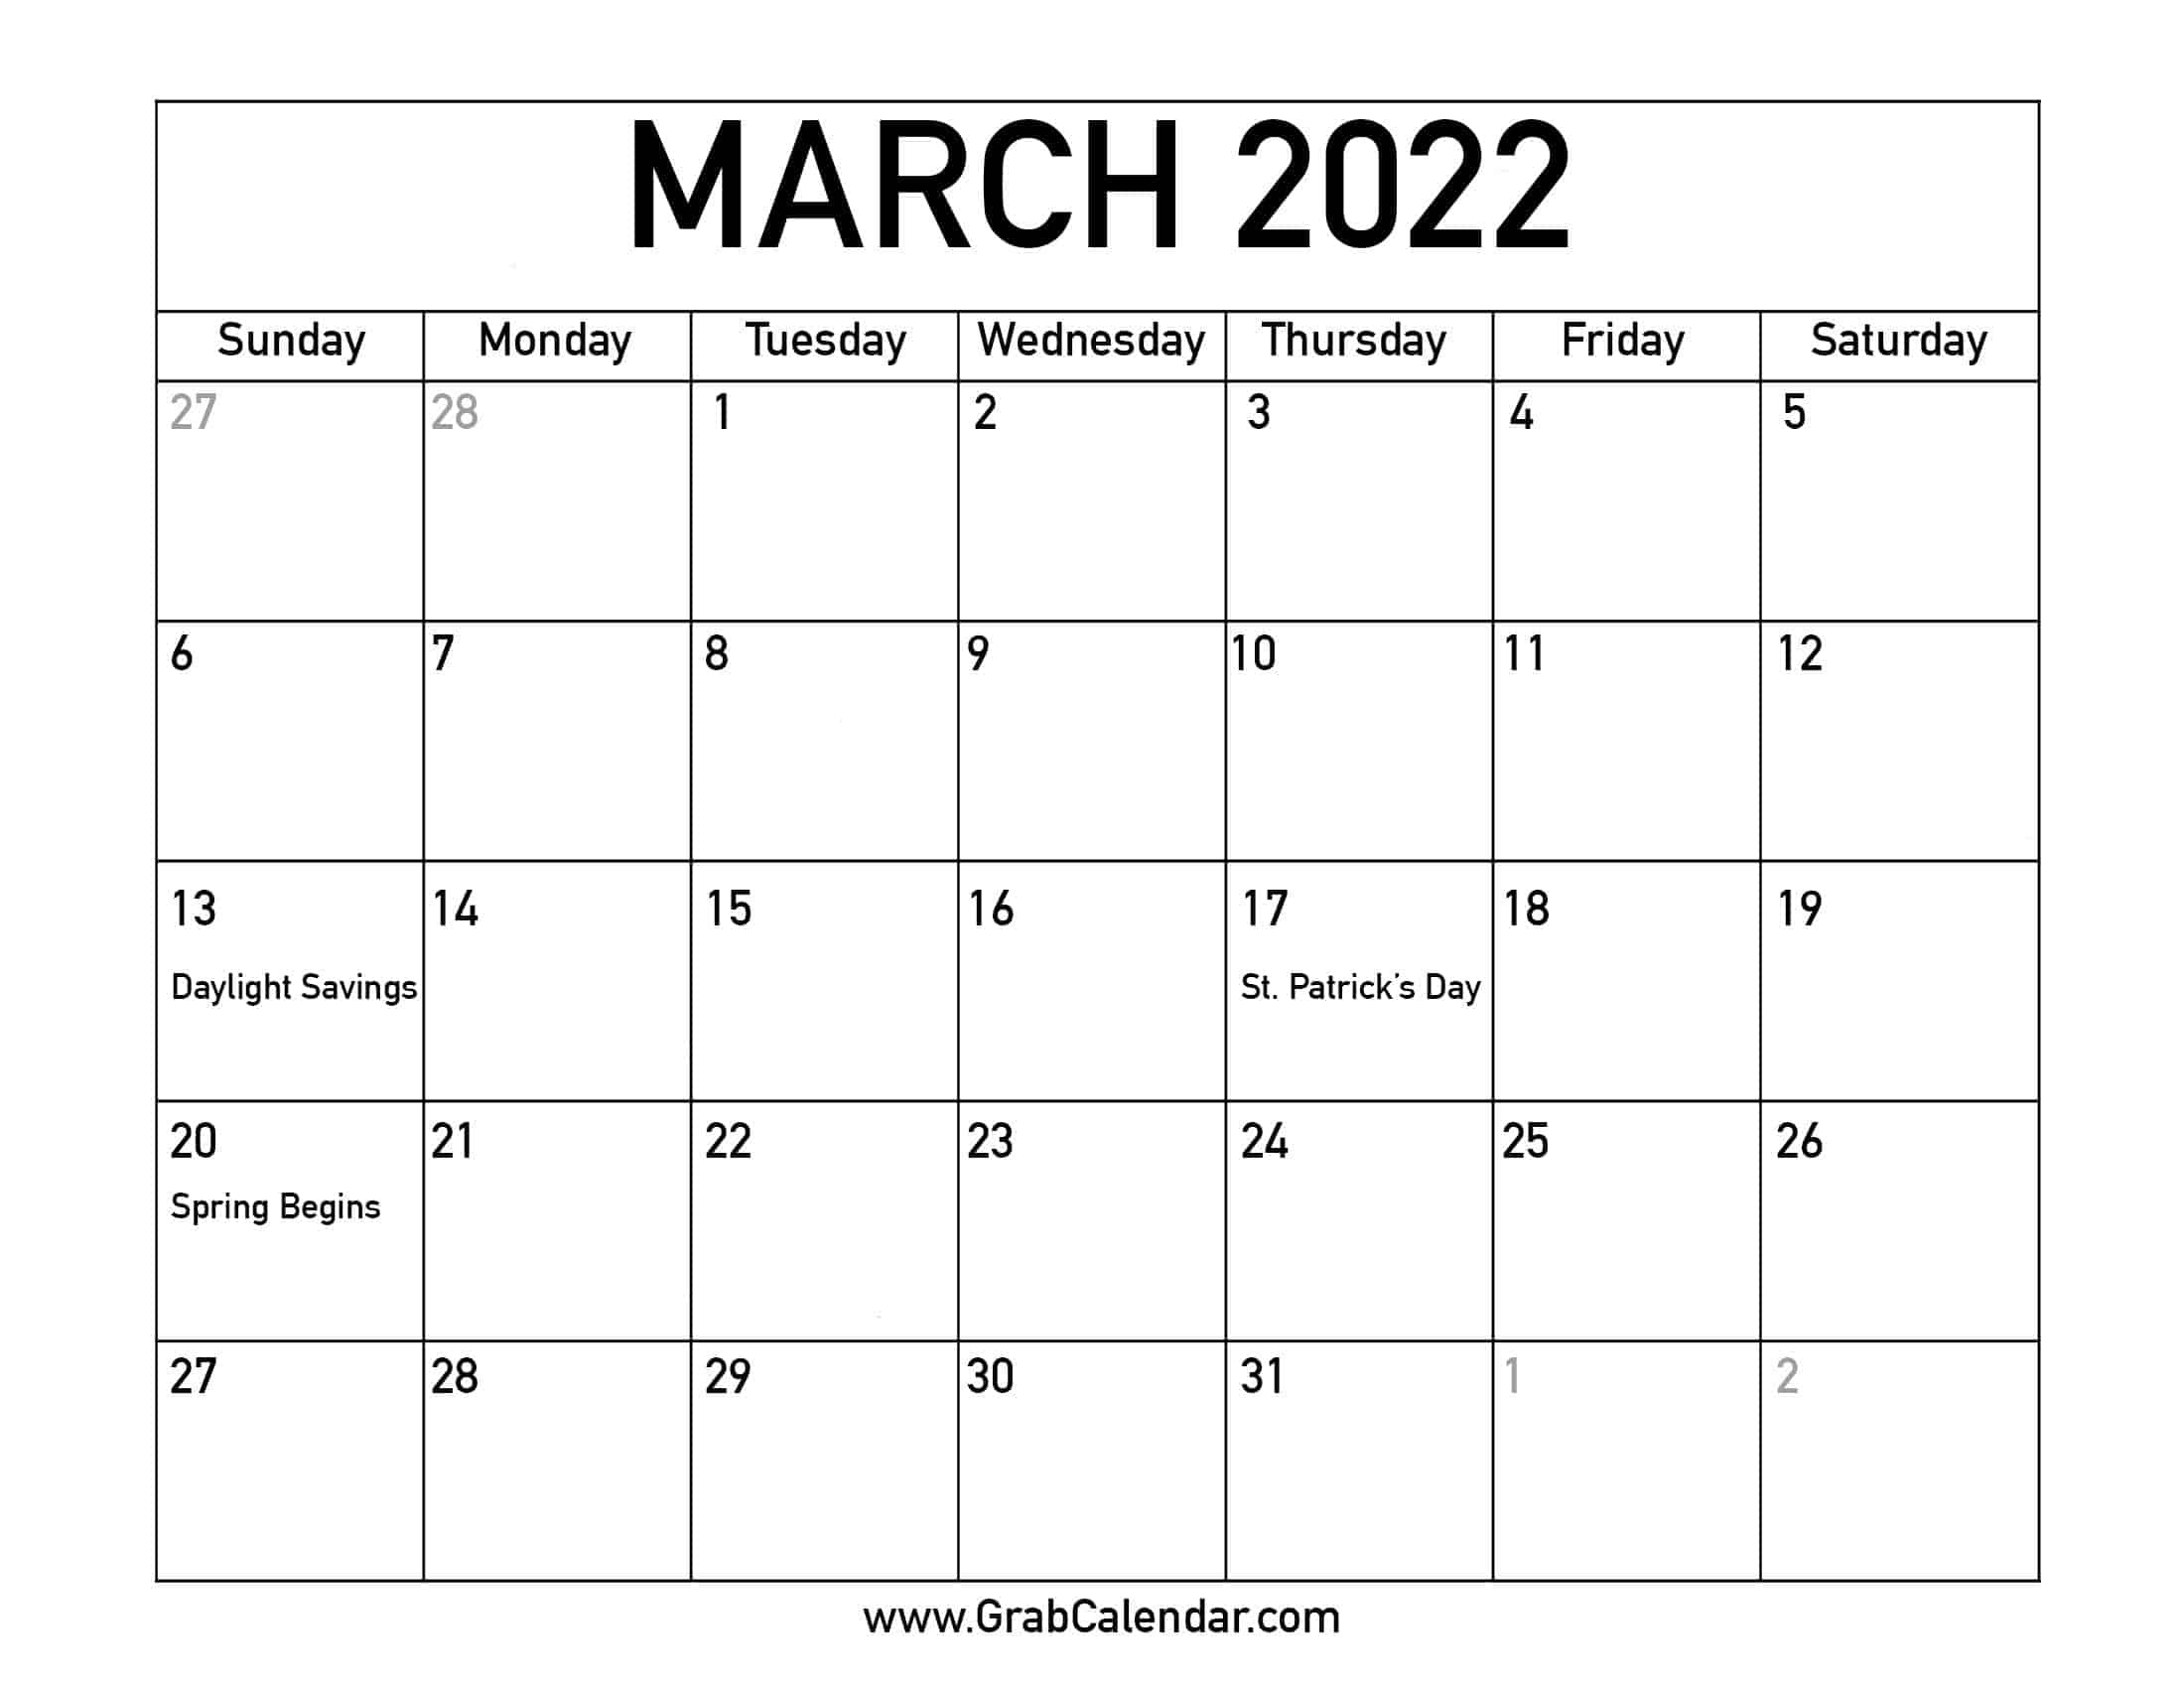 March 2022 Printable Calendar Printable March 2022 Calendar